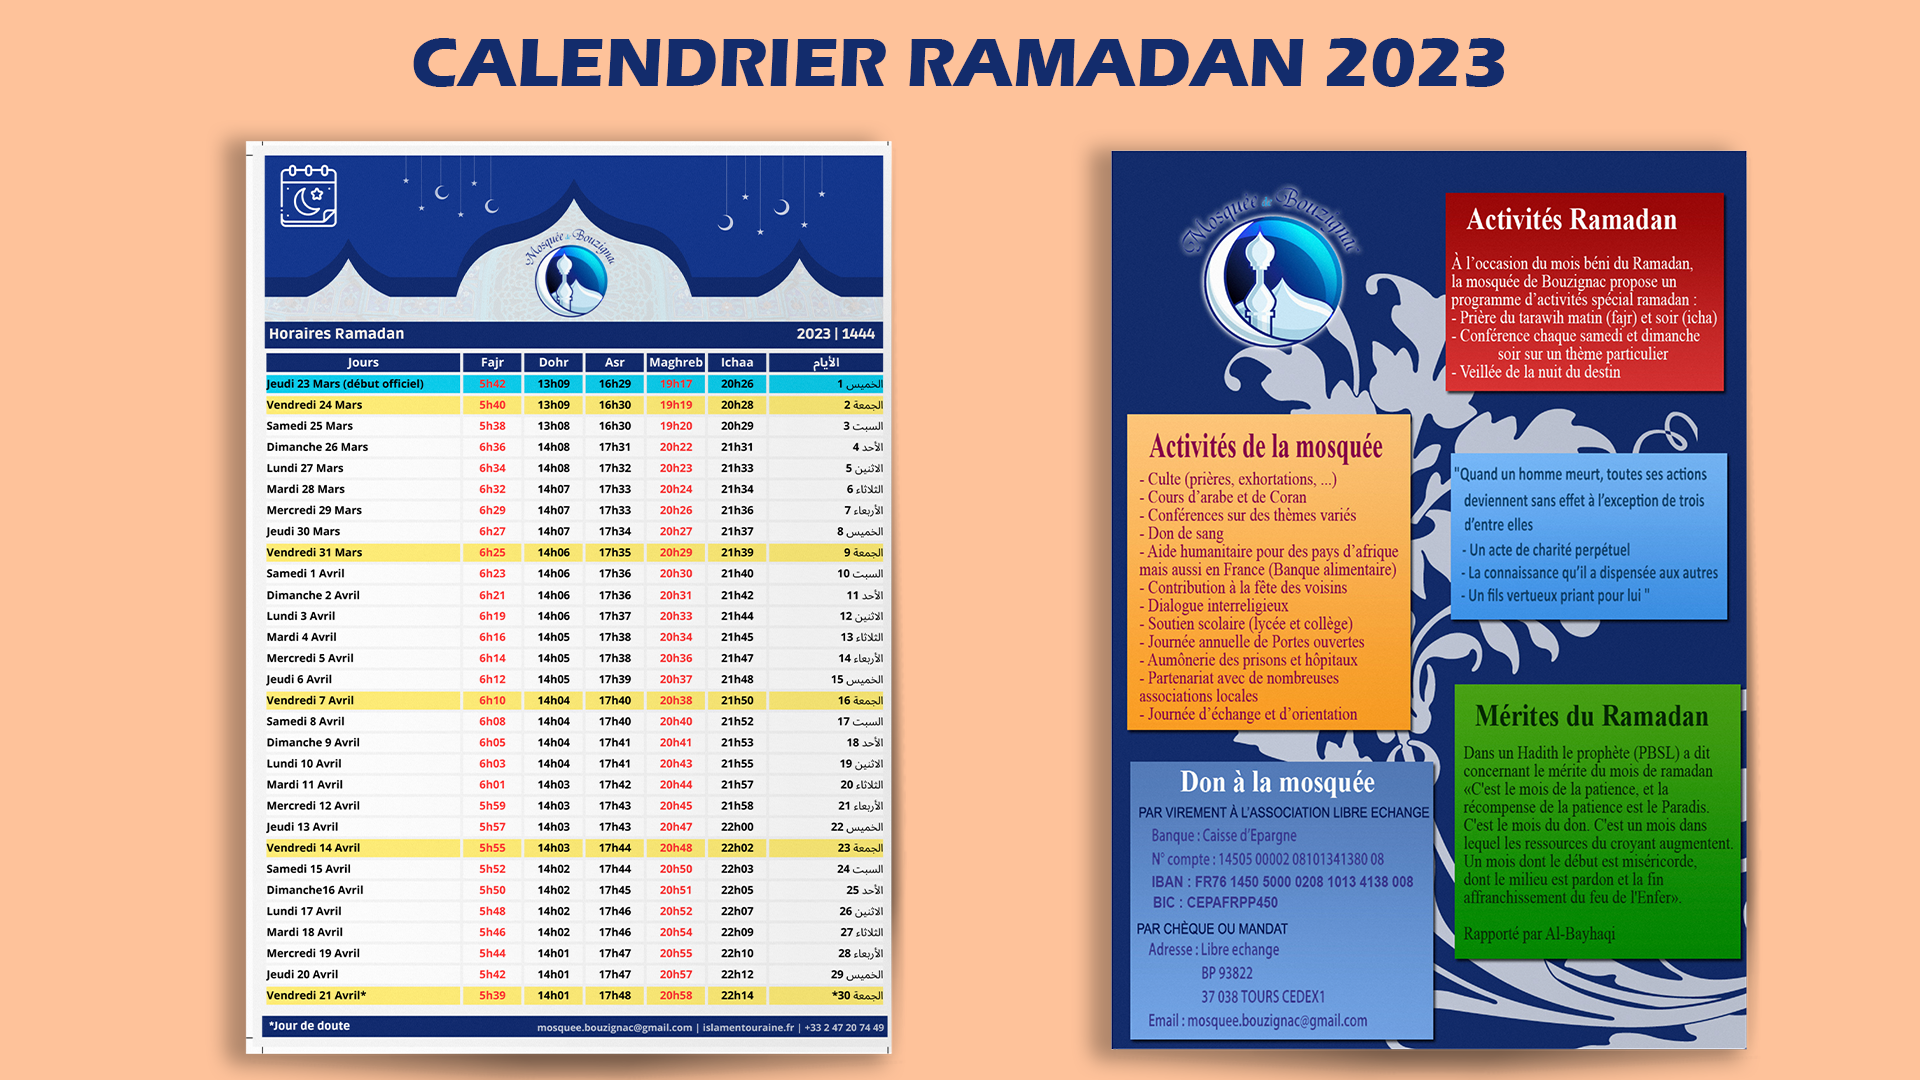 Calendrier ramadan et horaires de prière uniques pour 35 mosquées du Rhône